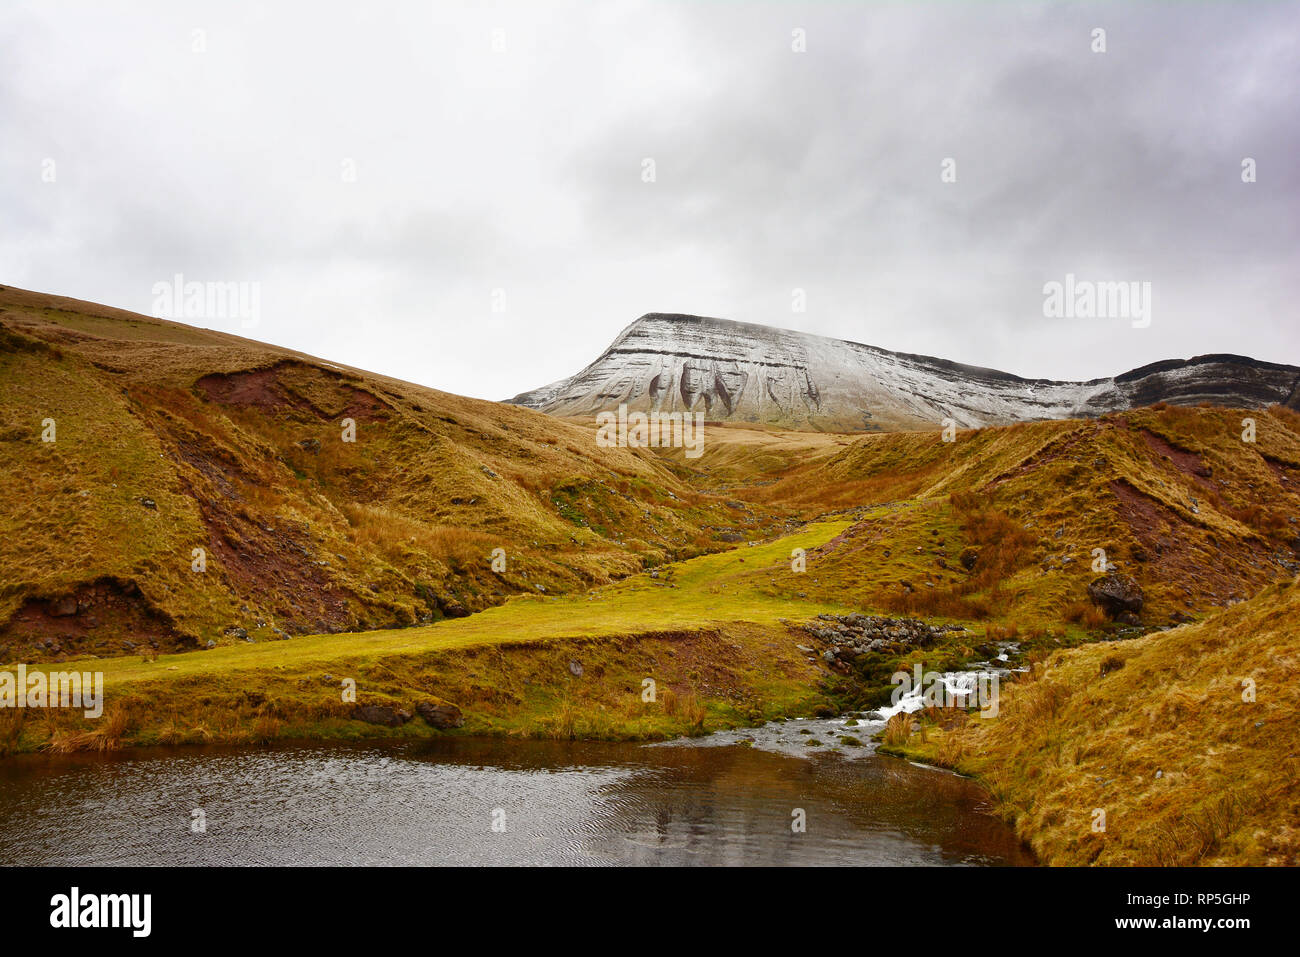 Picws Du abgedeckt im Schnee im Winter, Brecon Beacons National Park, Wales Stockfoto